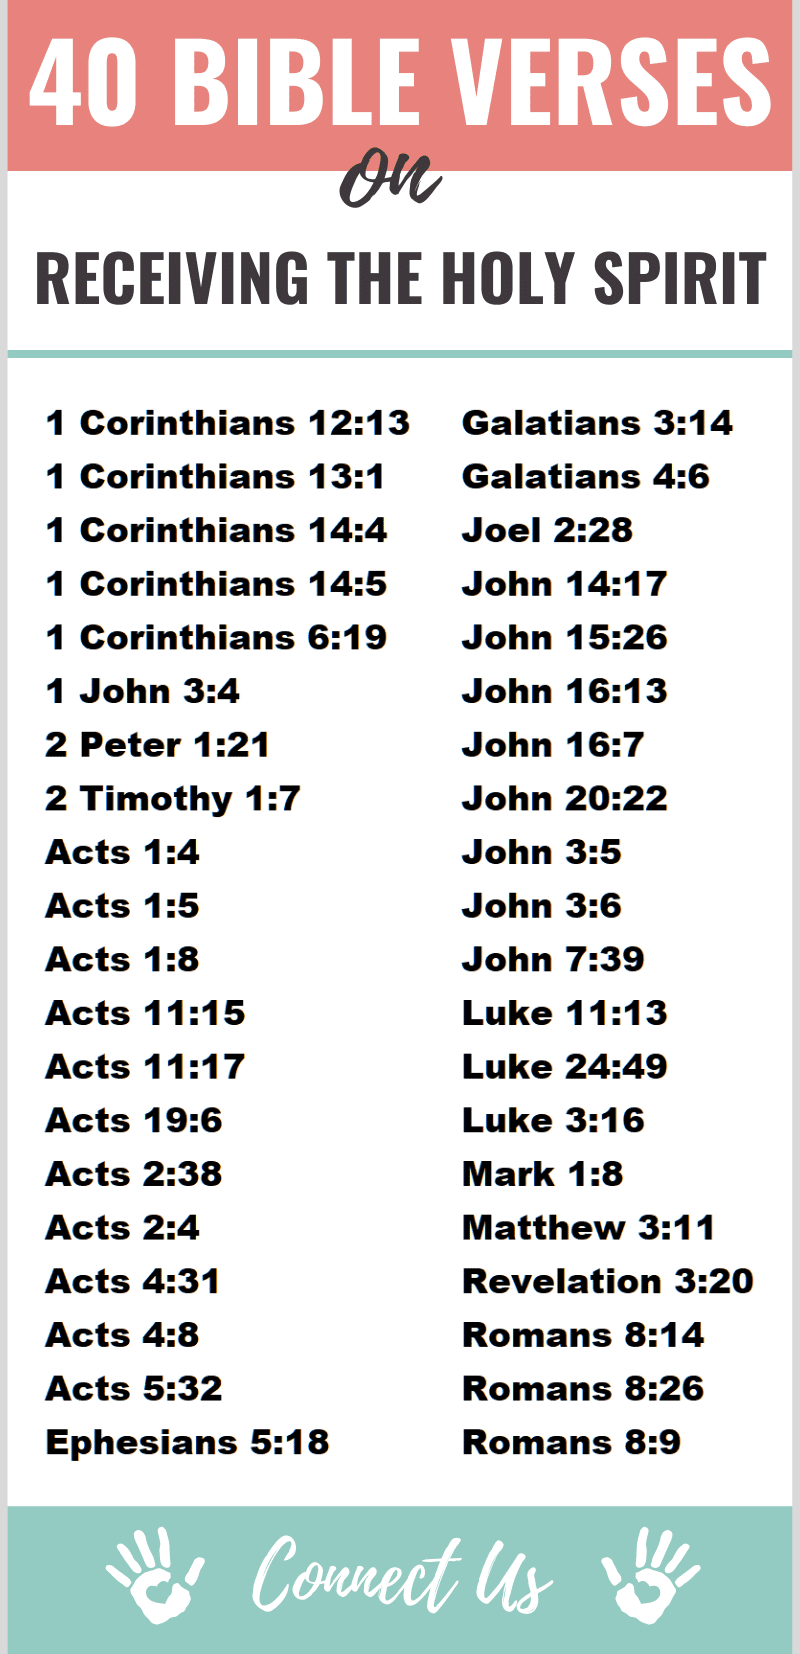 Versículos bíblicos sobre la recepción del Espíritu Santo